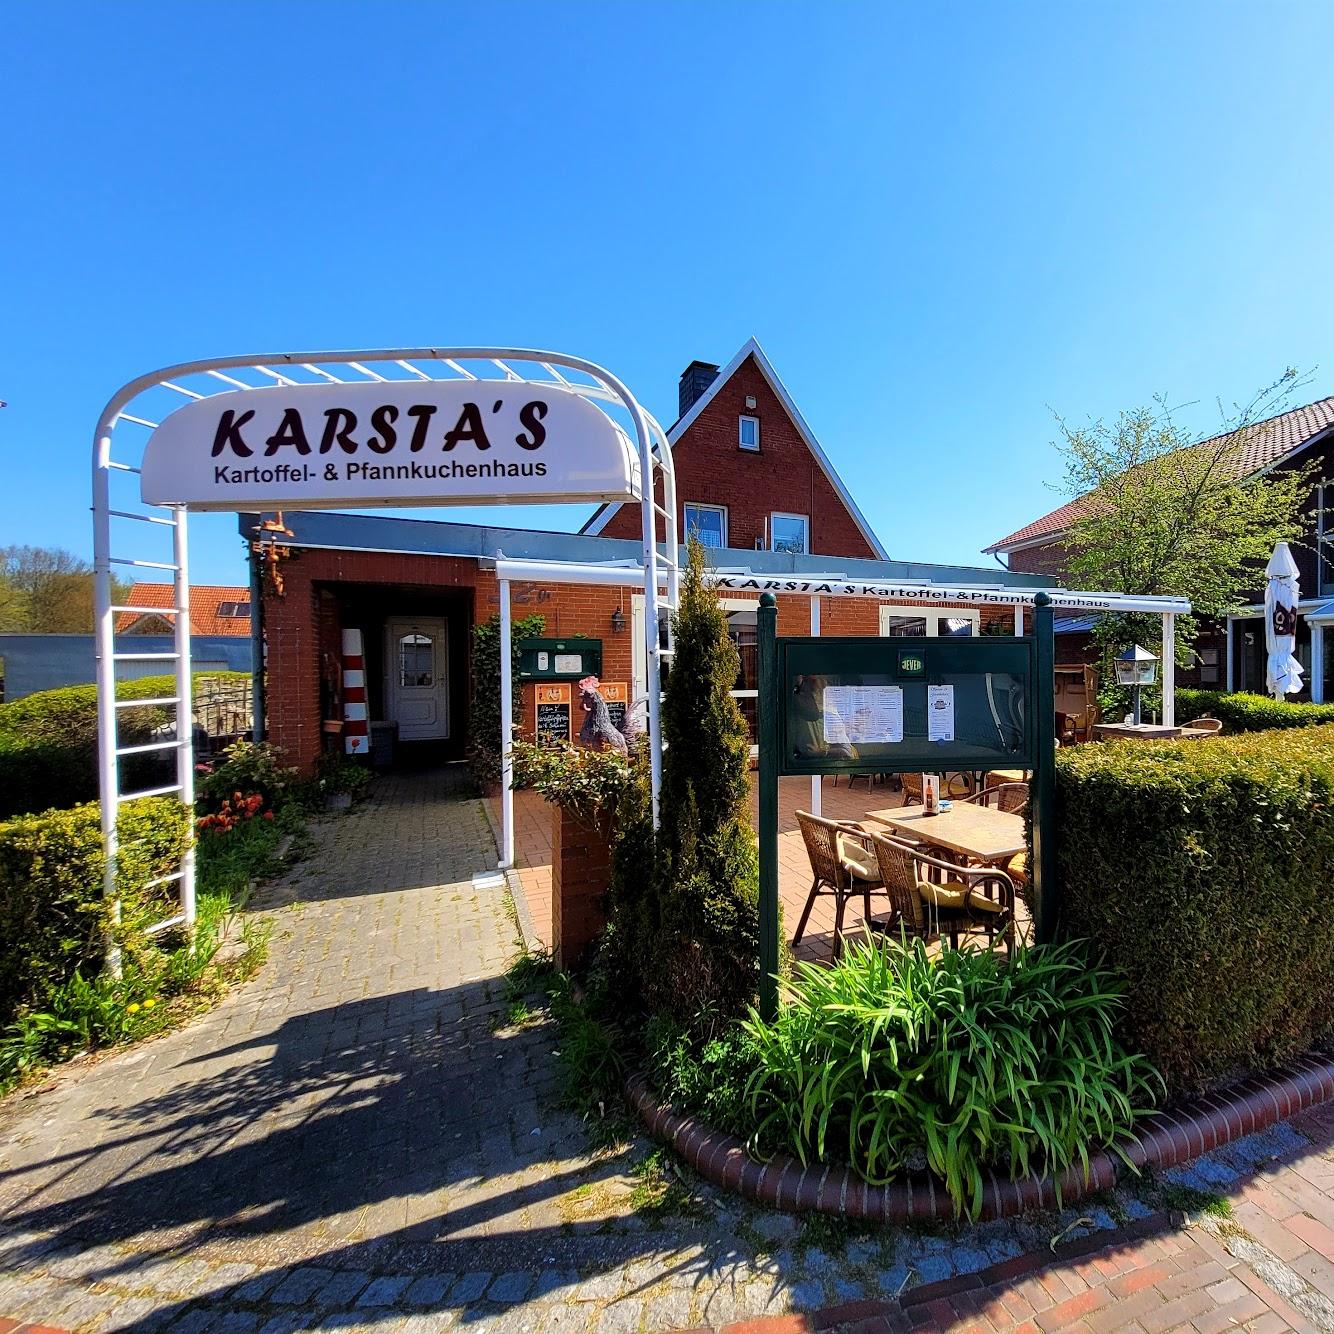 Restaurant "Karsta